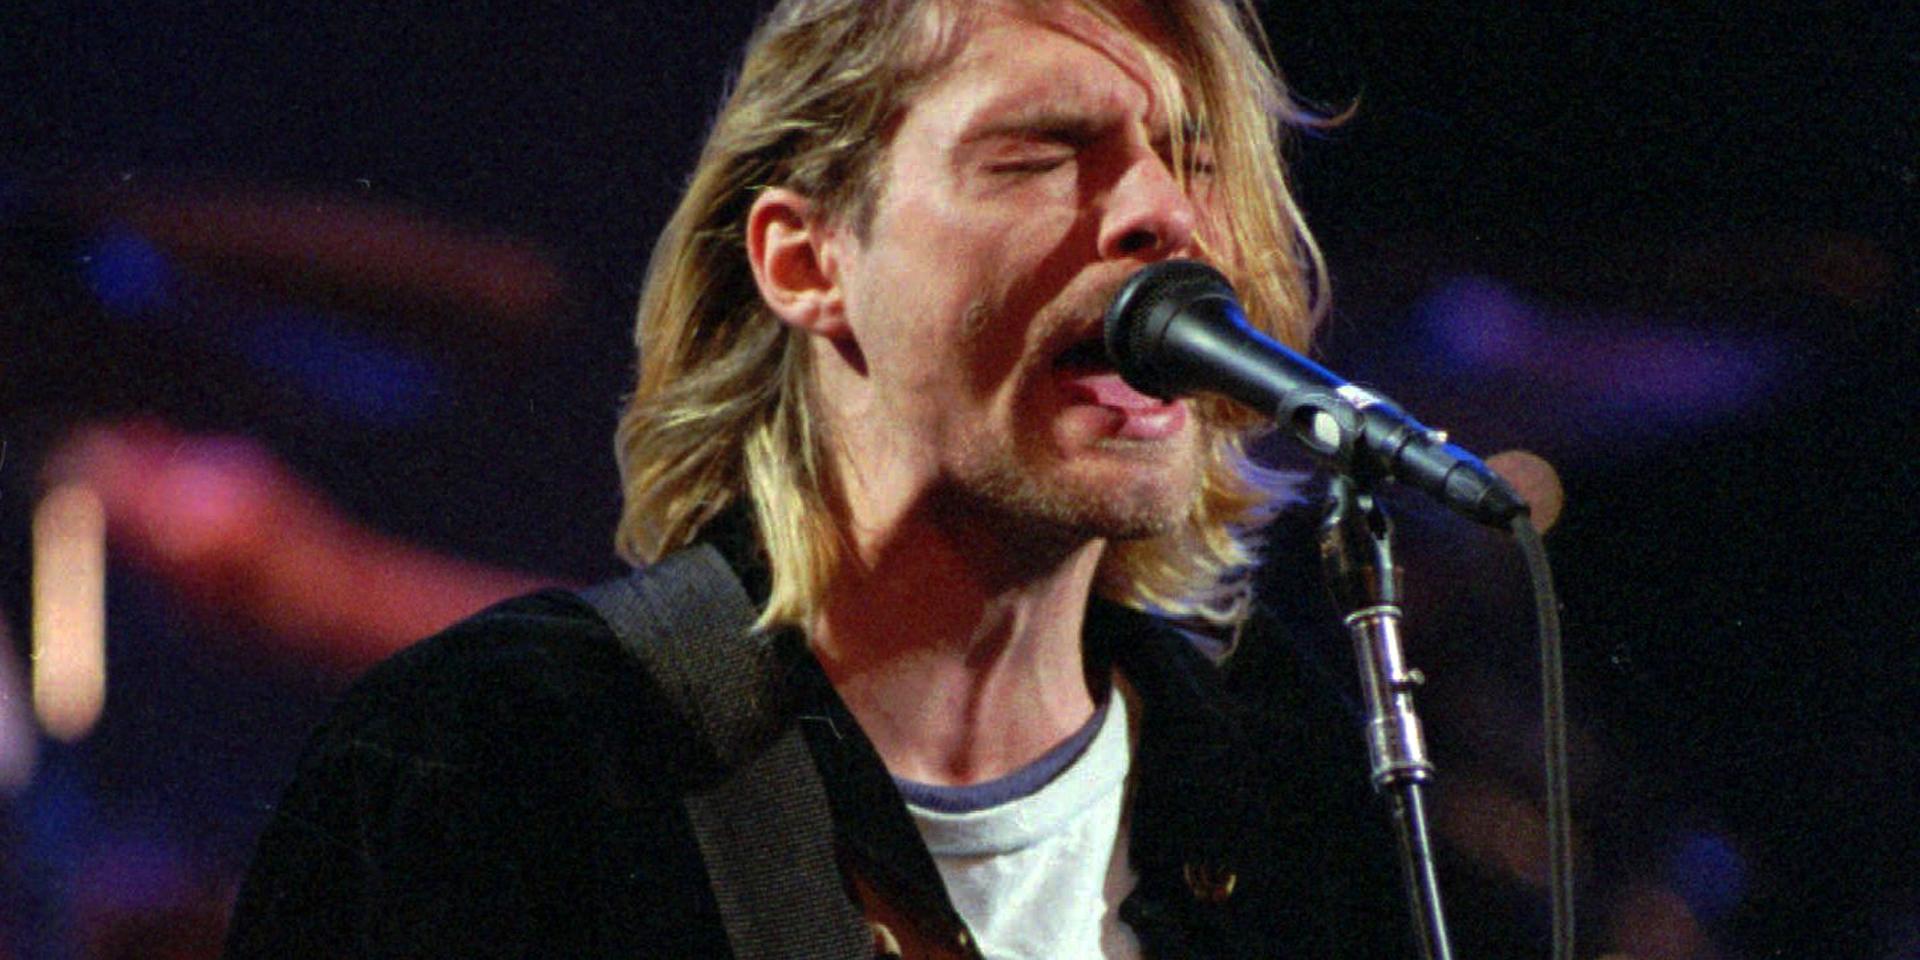 Den Fender Mustang-gitarr som Kurt Cobain spelade på i videon till 'Smells like teen spirit' går under klubban på en auktion i maj.